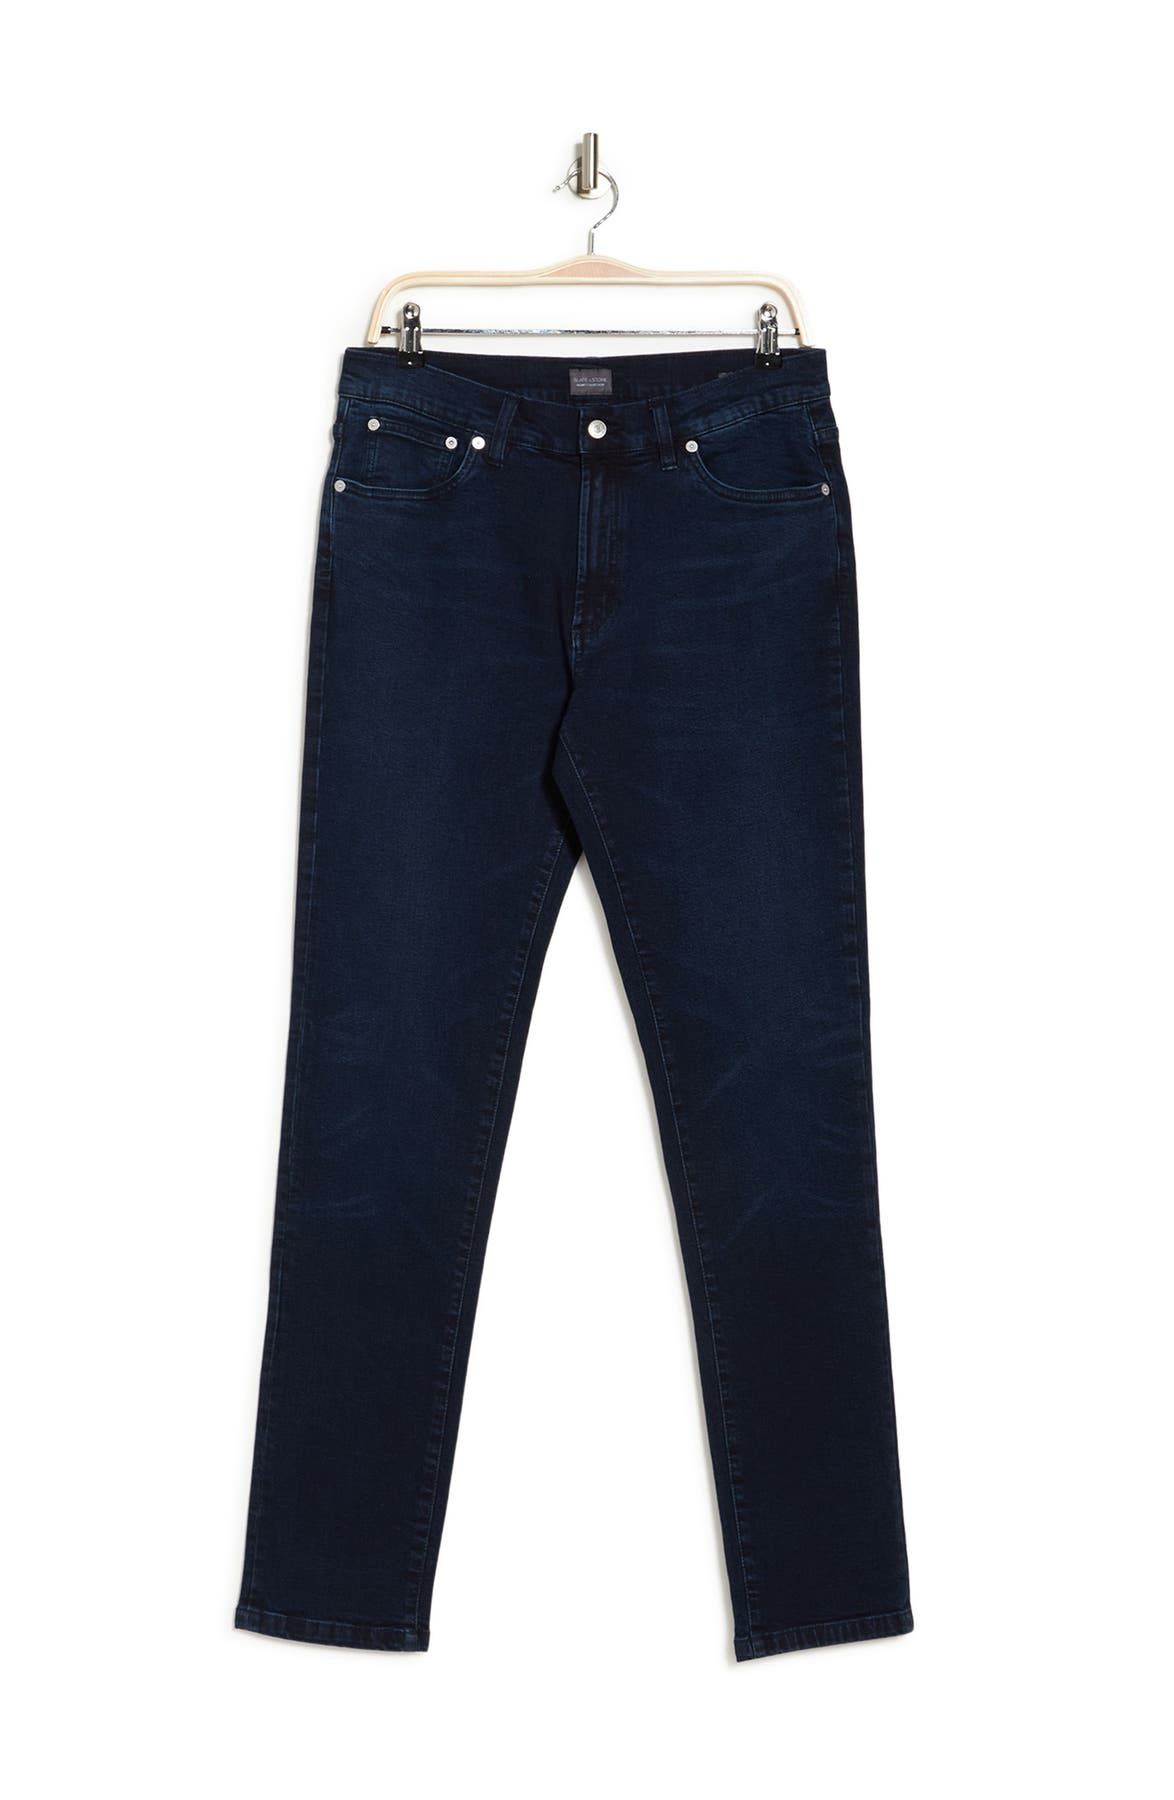 Джинсовые джинсы скинни Mercer Slate & Stone